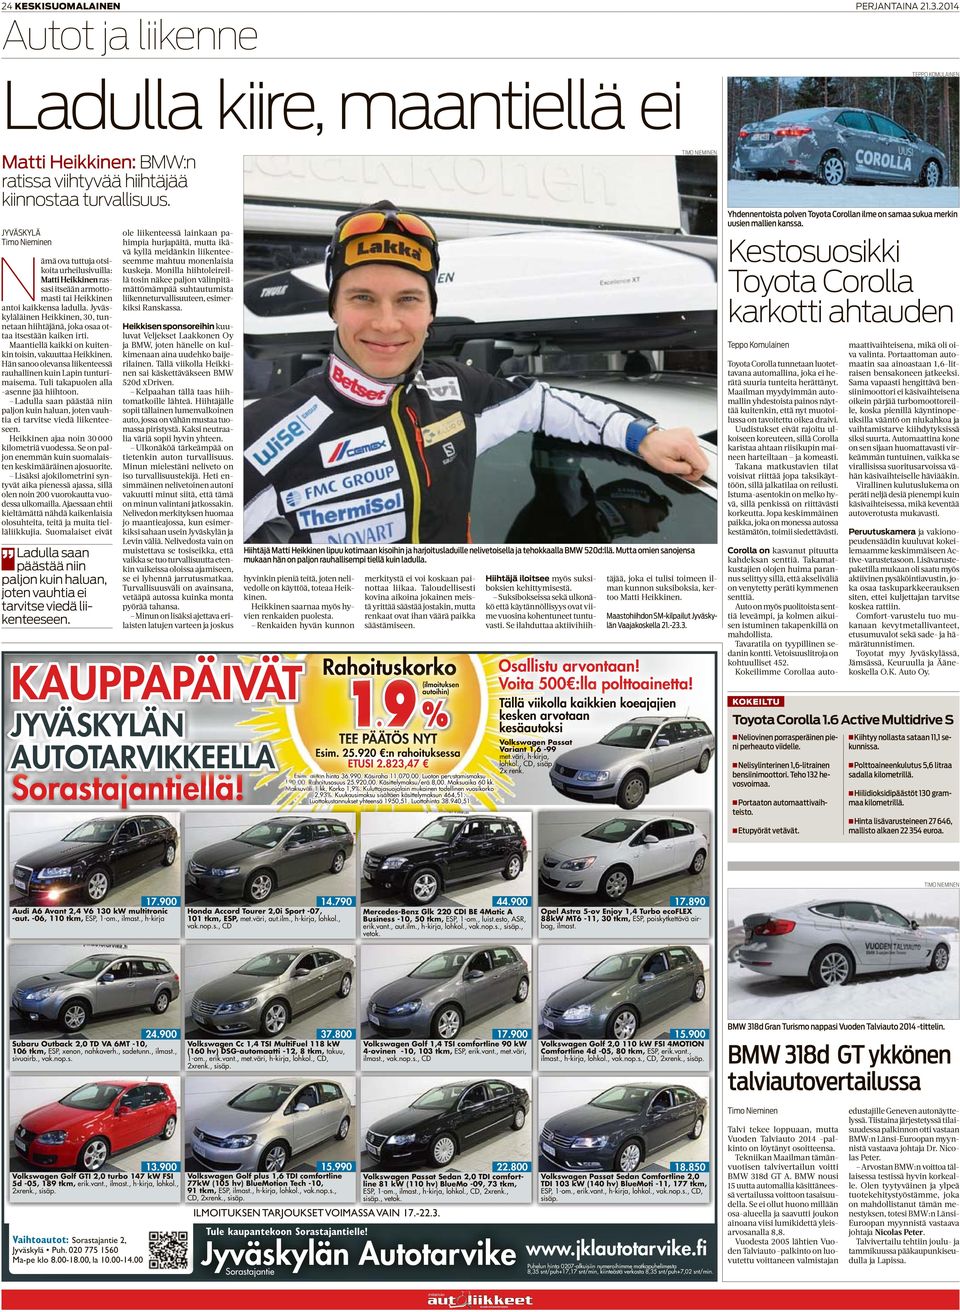 Jyväskyläläinen Heikkinen, 30, tunnetaan hiihtäjänä, joka osaa ottaa itsestään kaiken irti. Maantiellä kaikki on kuitenkin toisin, vakuuttaa Heikkinen.